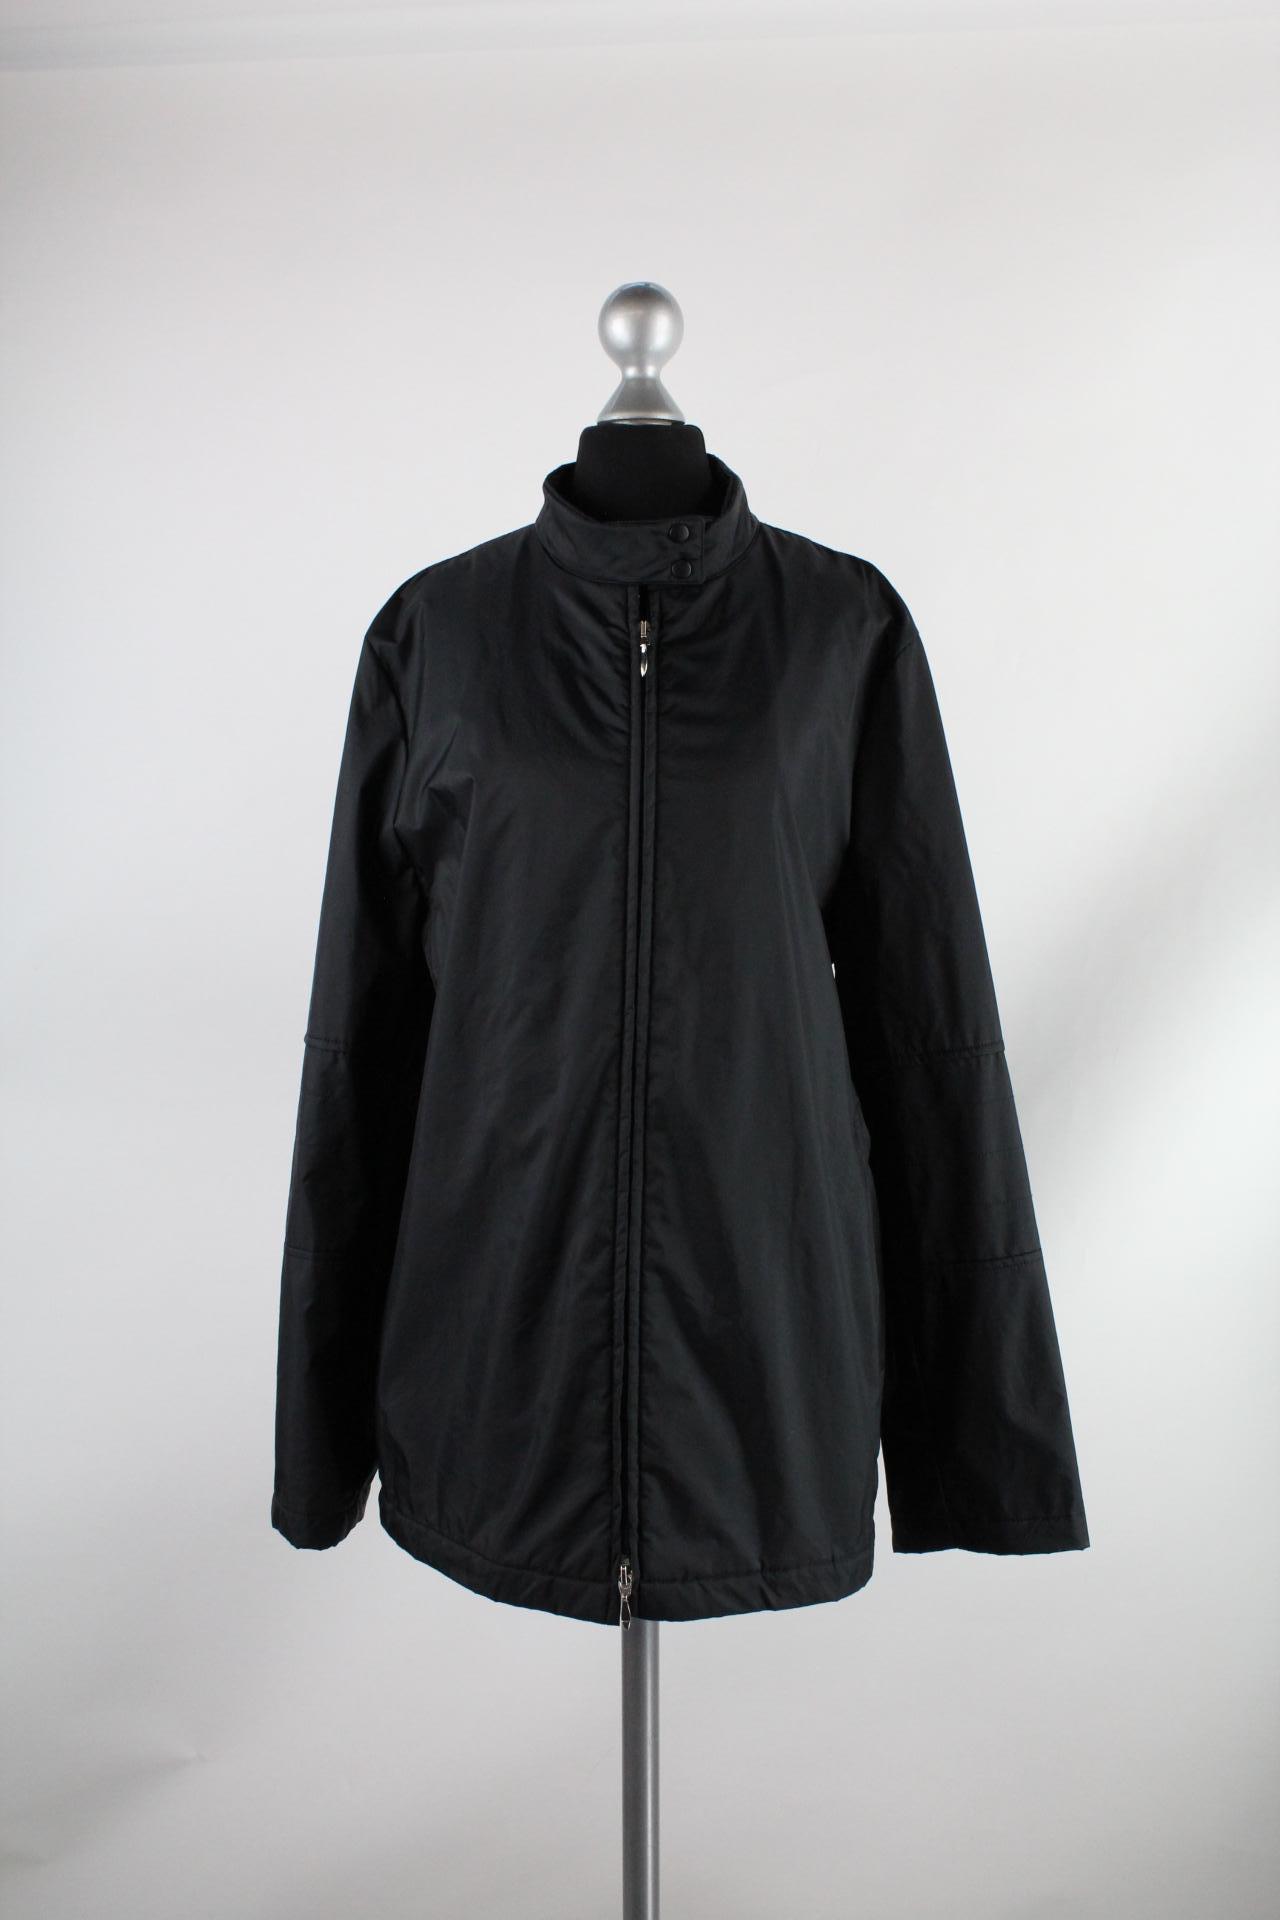 Esprit Damen-Jacke schwarz Größe 42